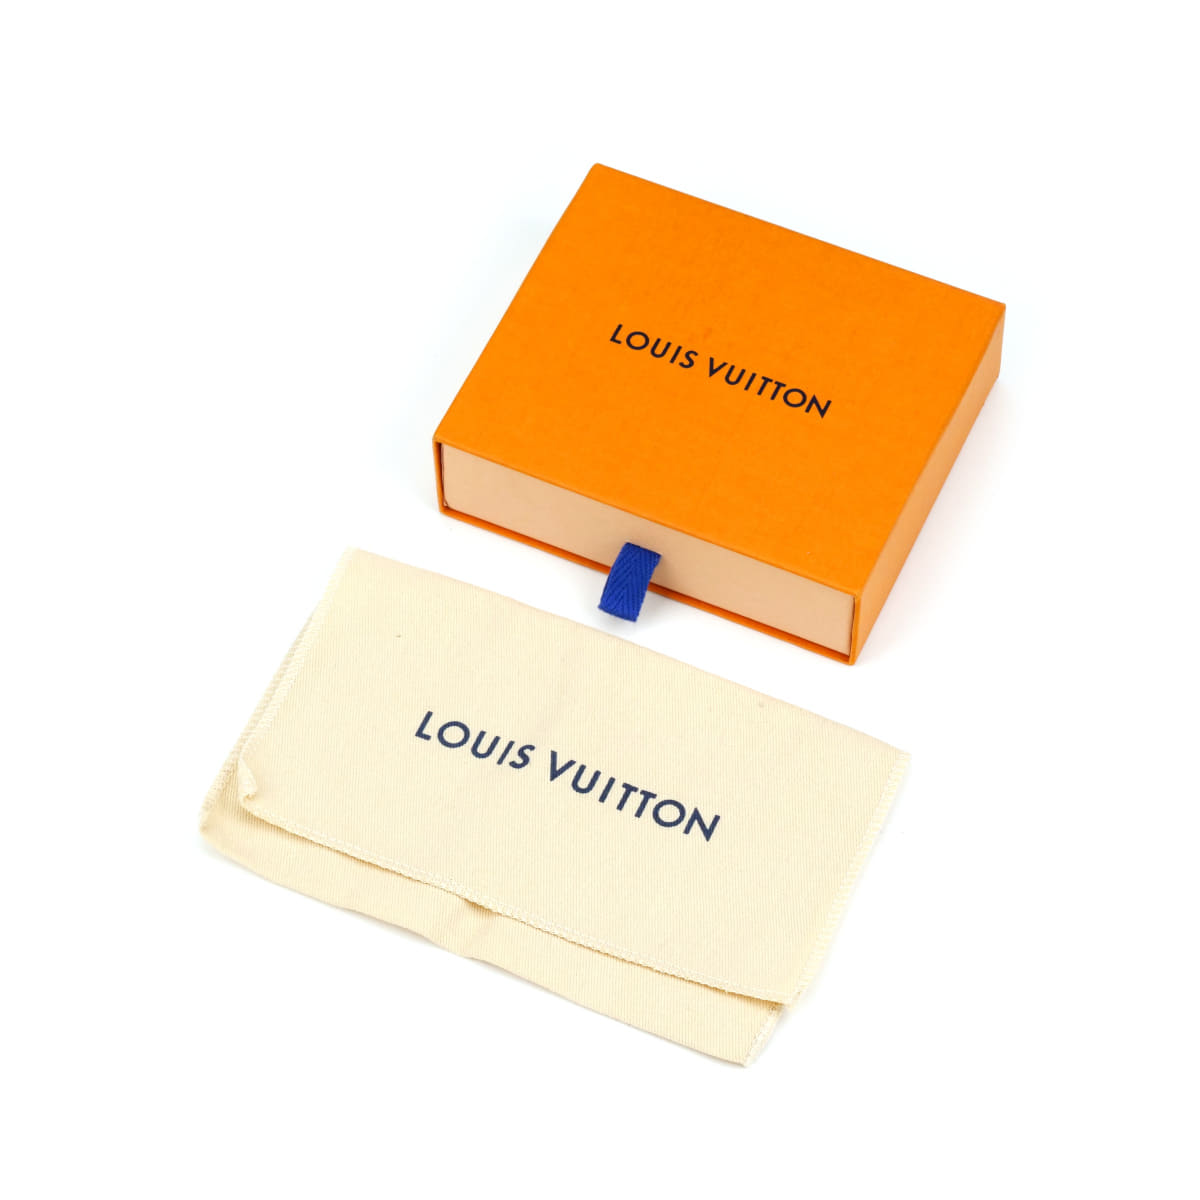 Louis Vuitton Signature Chain Bracelet M80178 Metal Multicolor